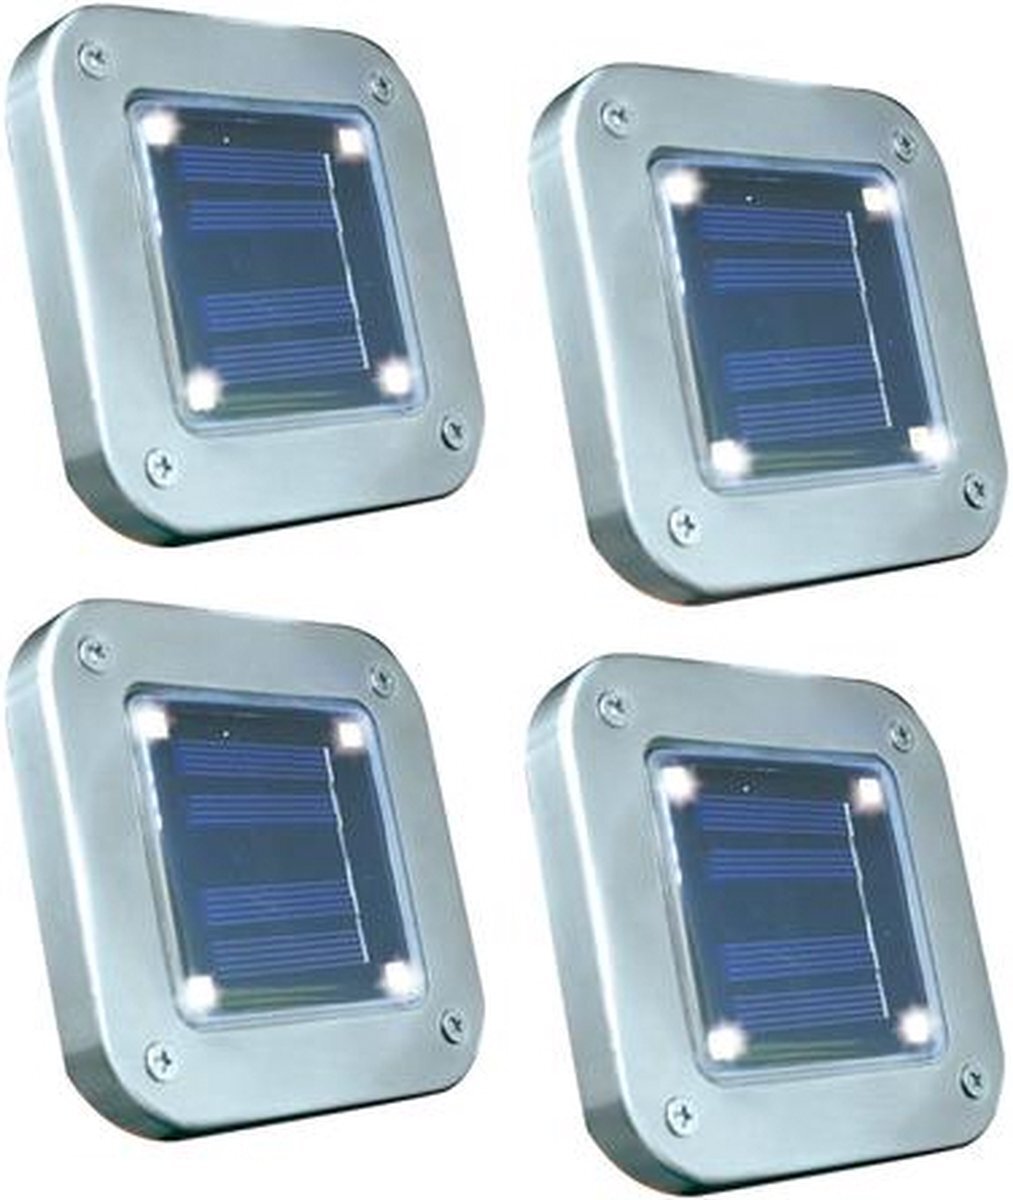 - Padverlichting - Tuinlampen - Grondspots - Solar Lights – Solar LED Tuinlampen - Tuinlampen Op Zonne energie - Buitenverlichting